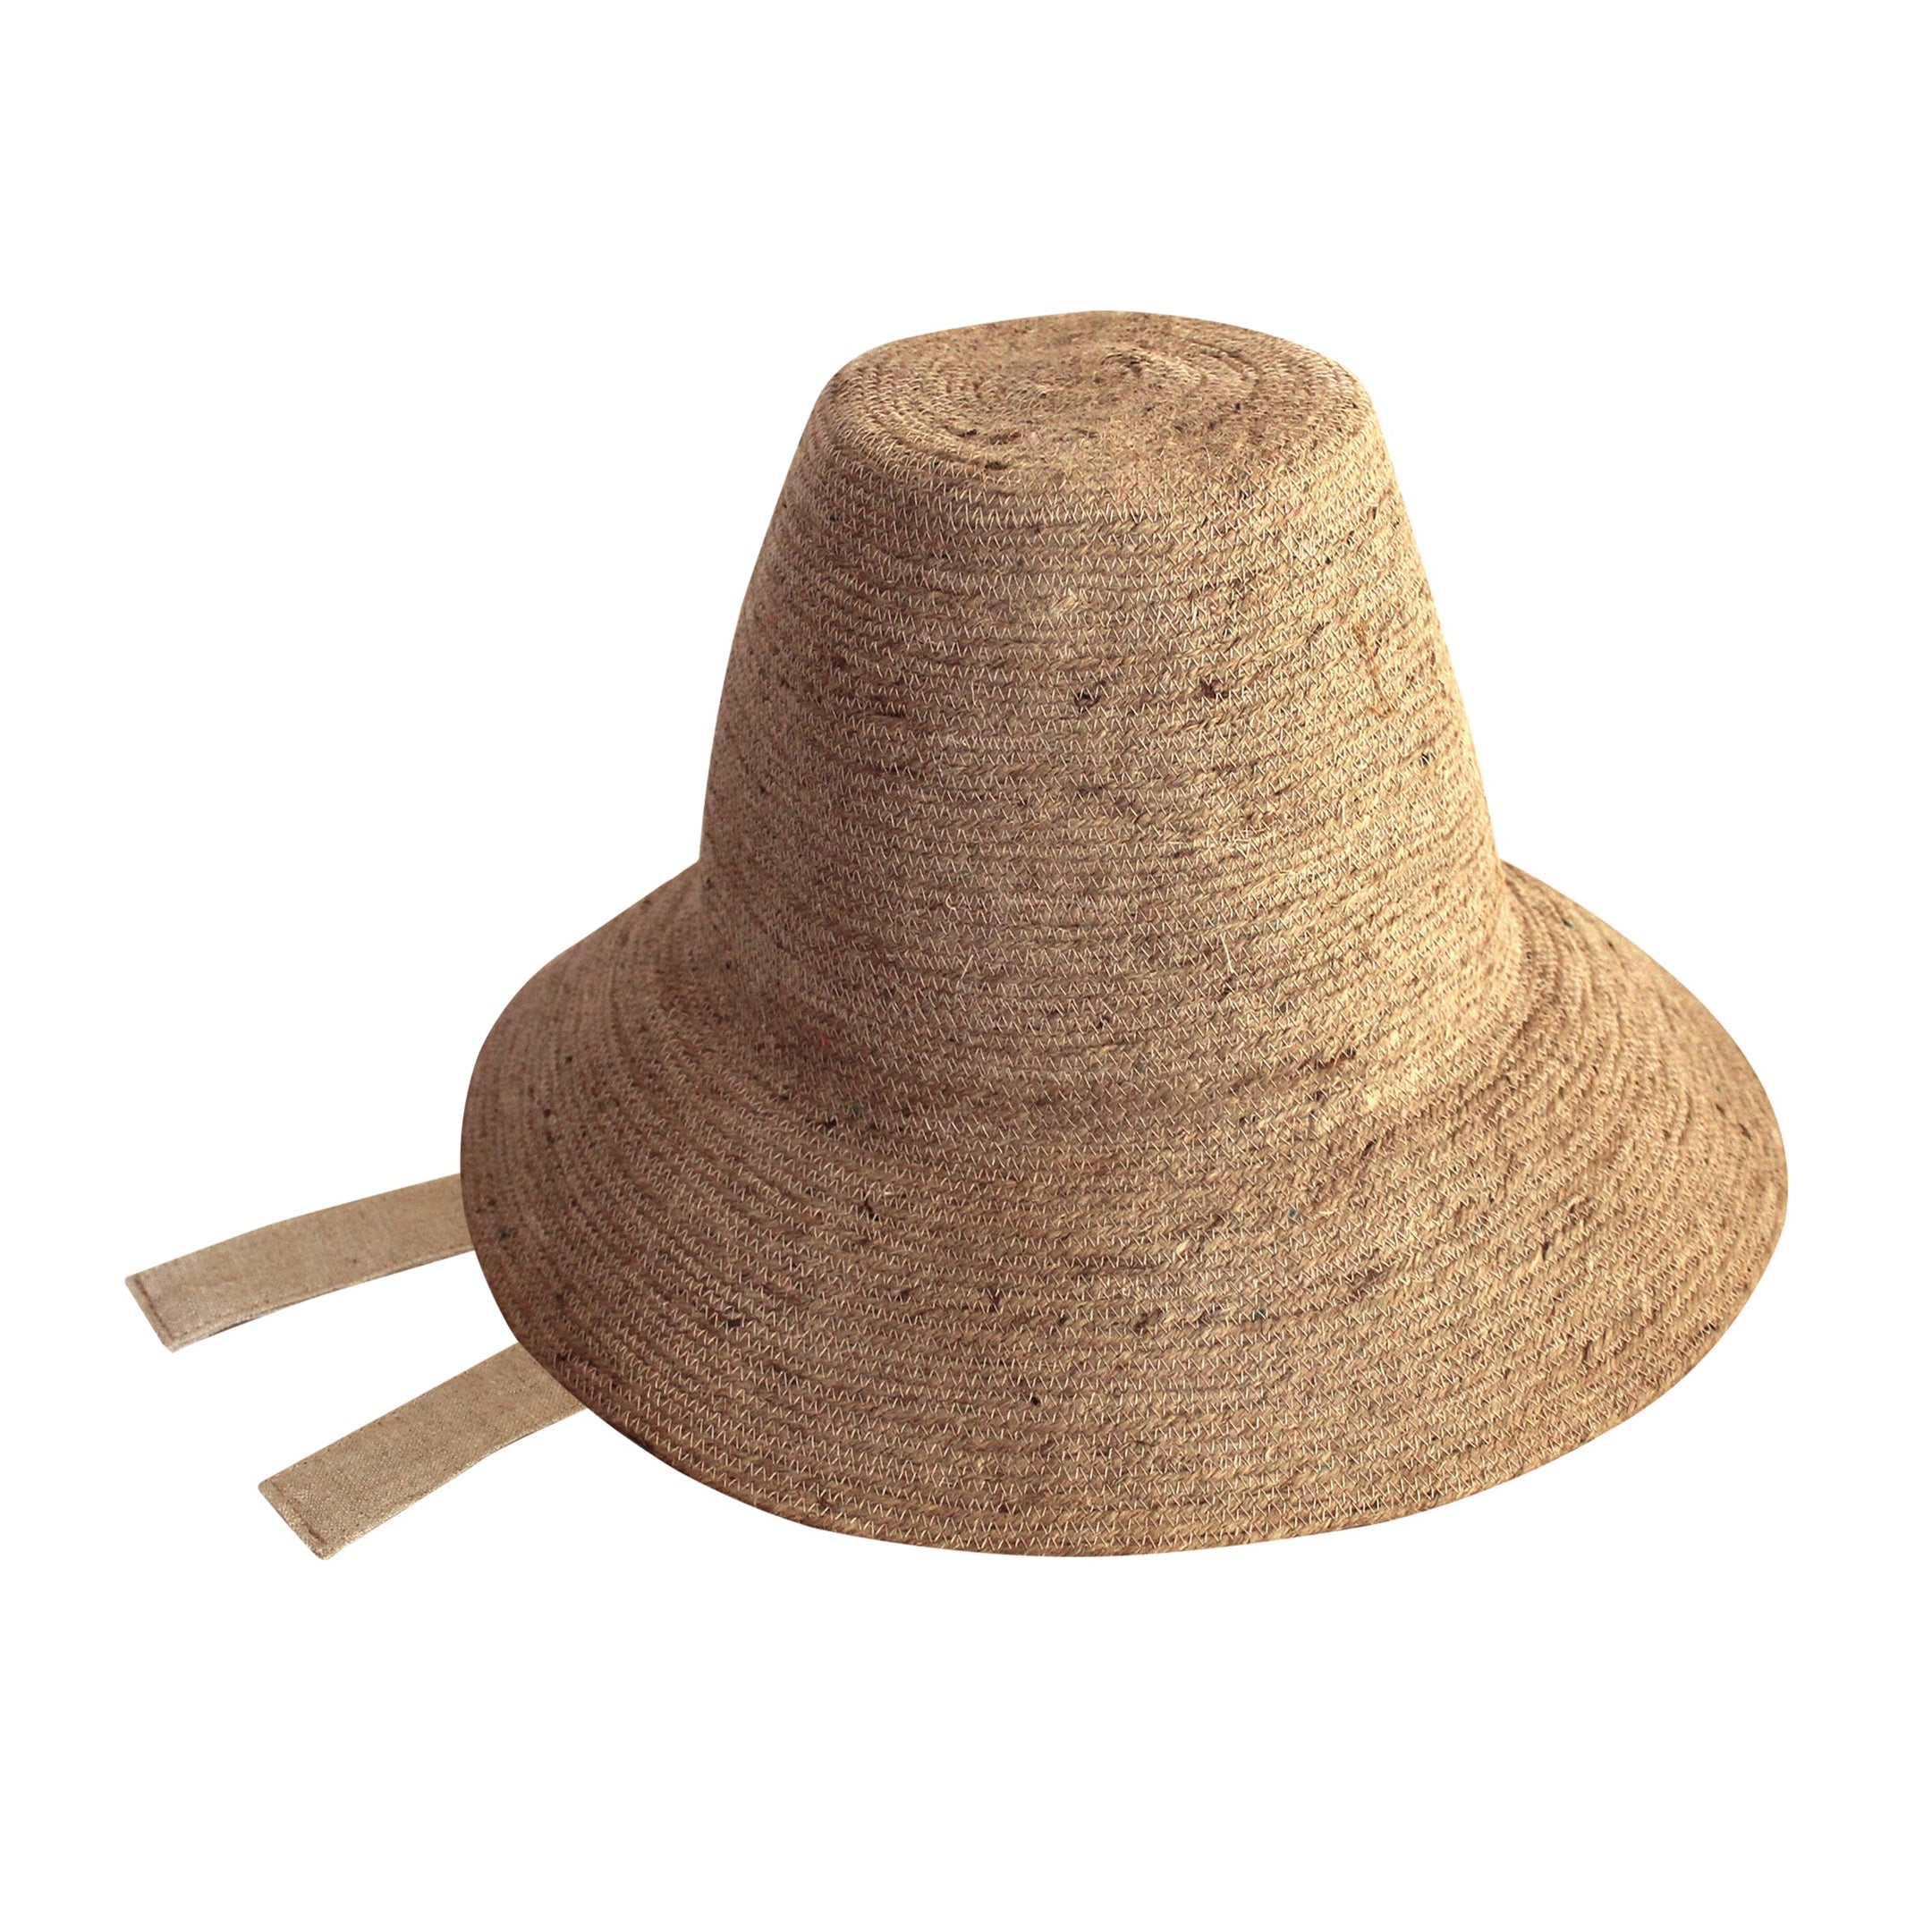 Buy MEG Jute Straw Hat, in Nude Beige (Pre-order) by BrunnaCo